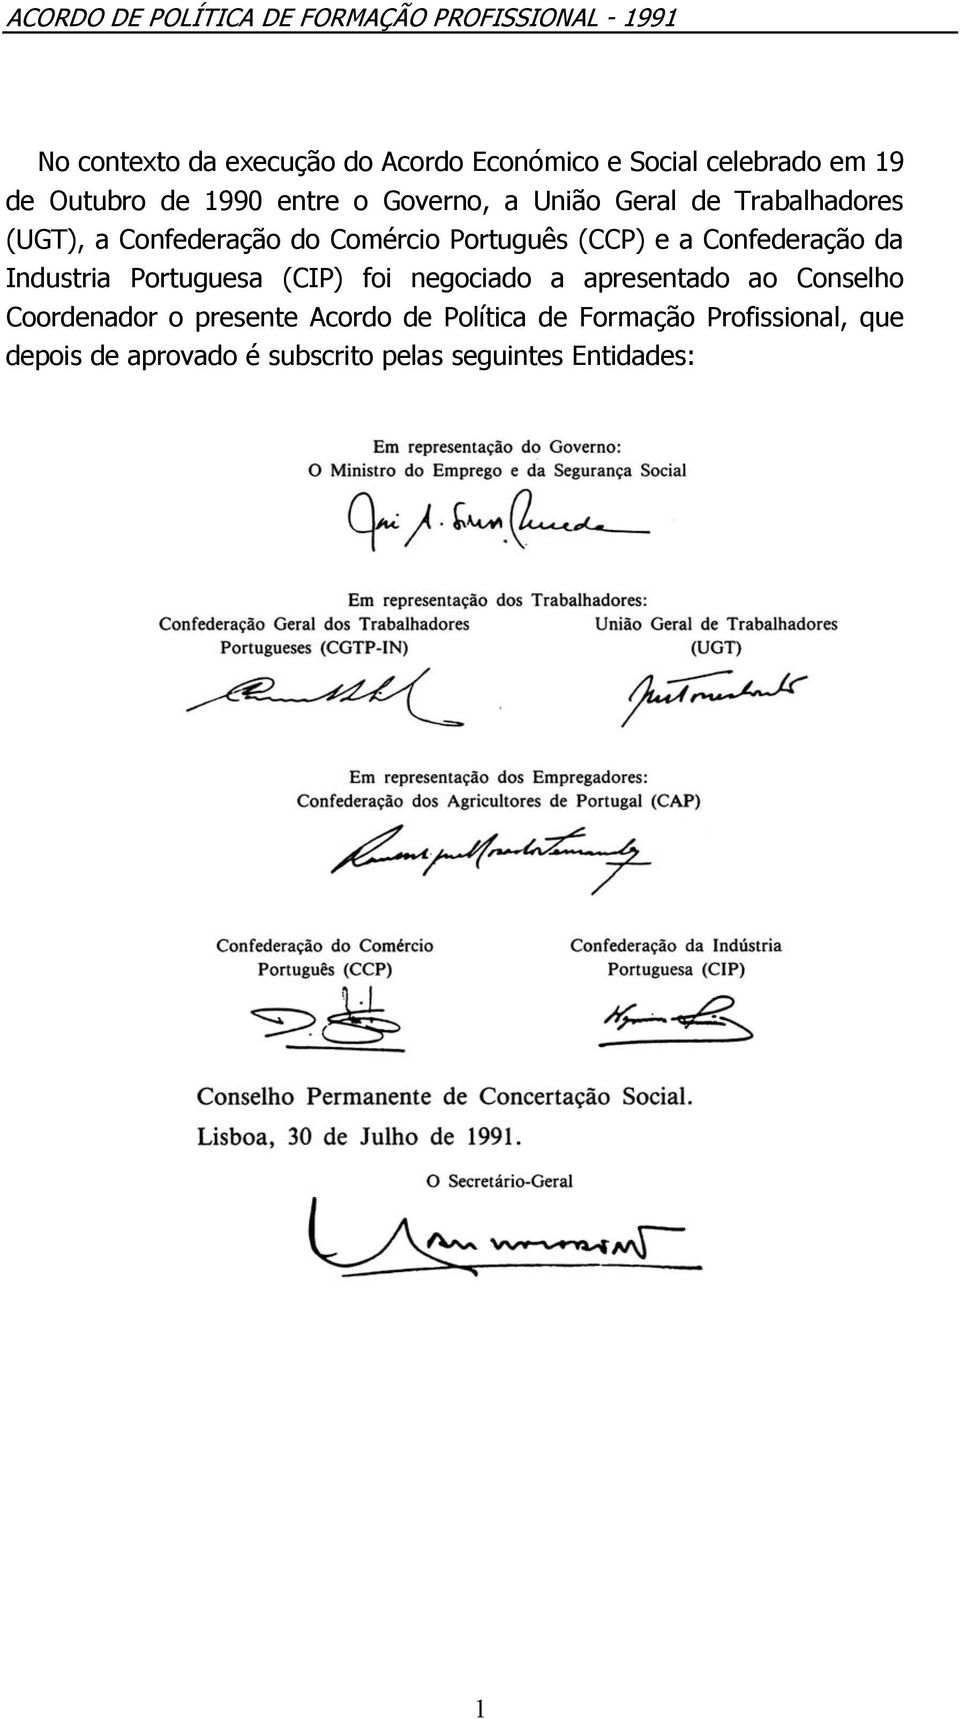 Confederação da Industria Portuguesa (CIP) foi negociado a apresentado ao Conselho Coordenador o